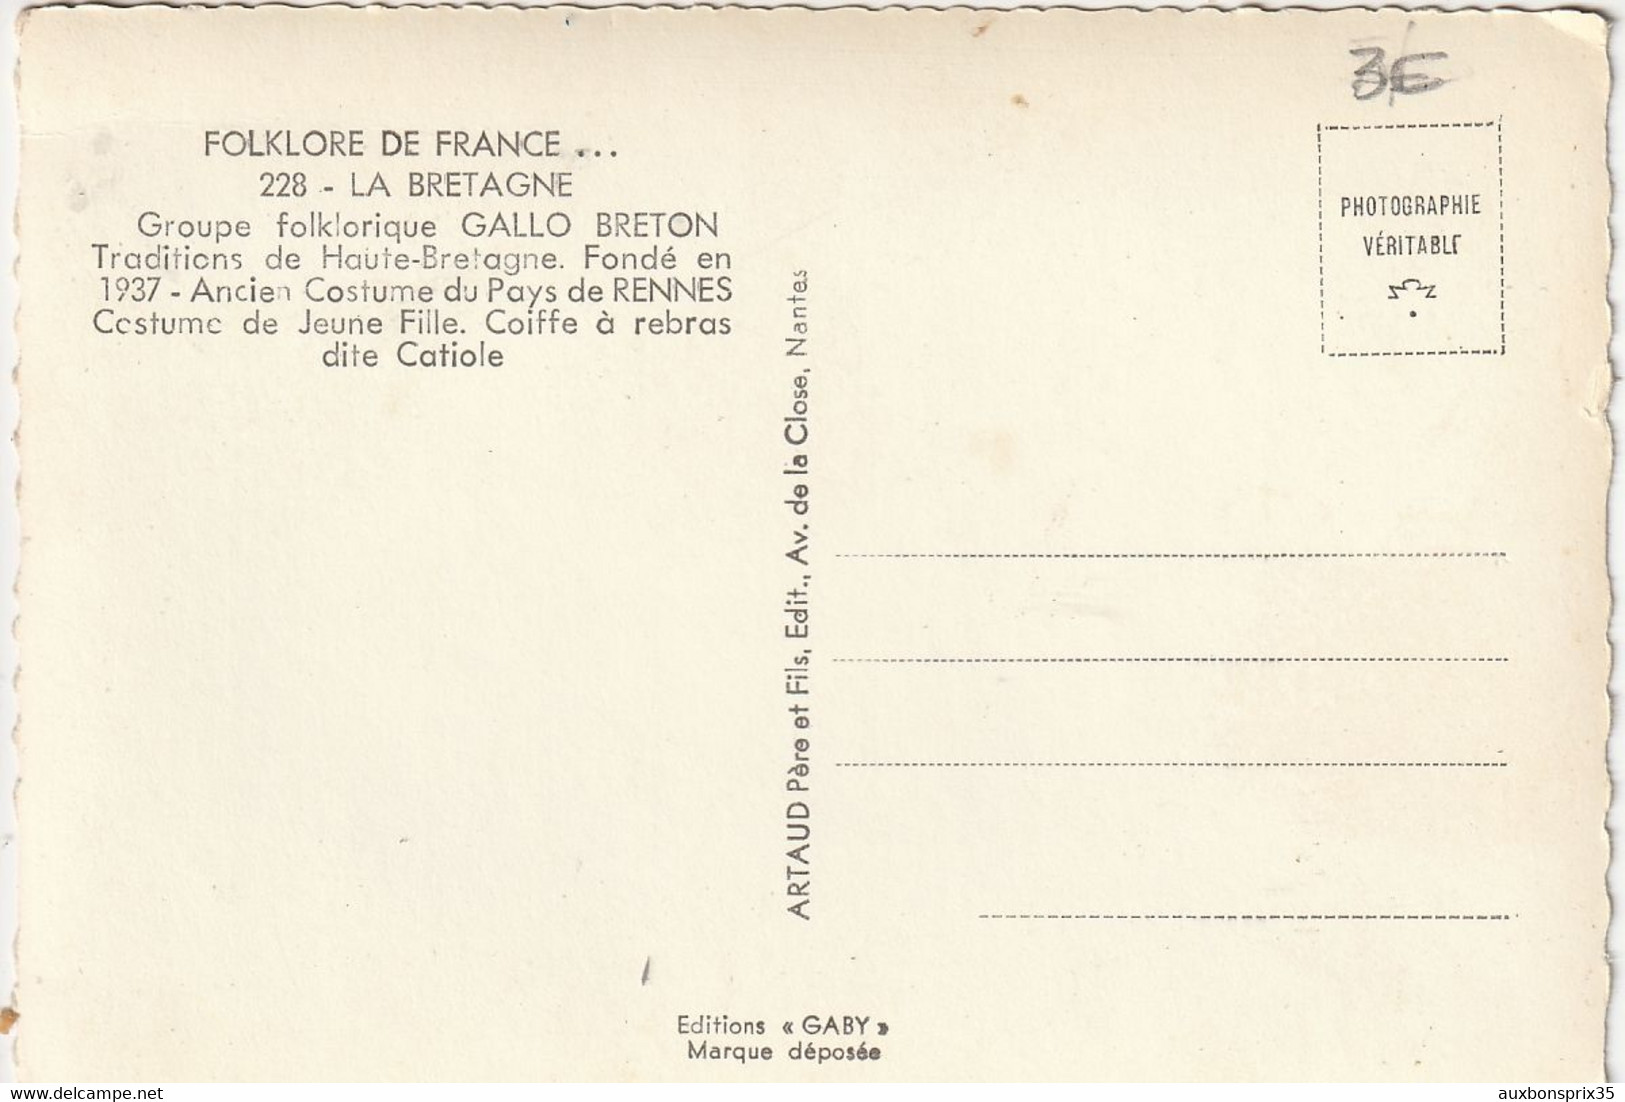 FOLKLORE DE FRANCE - LA BRETAGNE - GROUPE FOLKLORIQUE GALLO BRETON - EDITIONS GABY - Bretagne